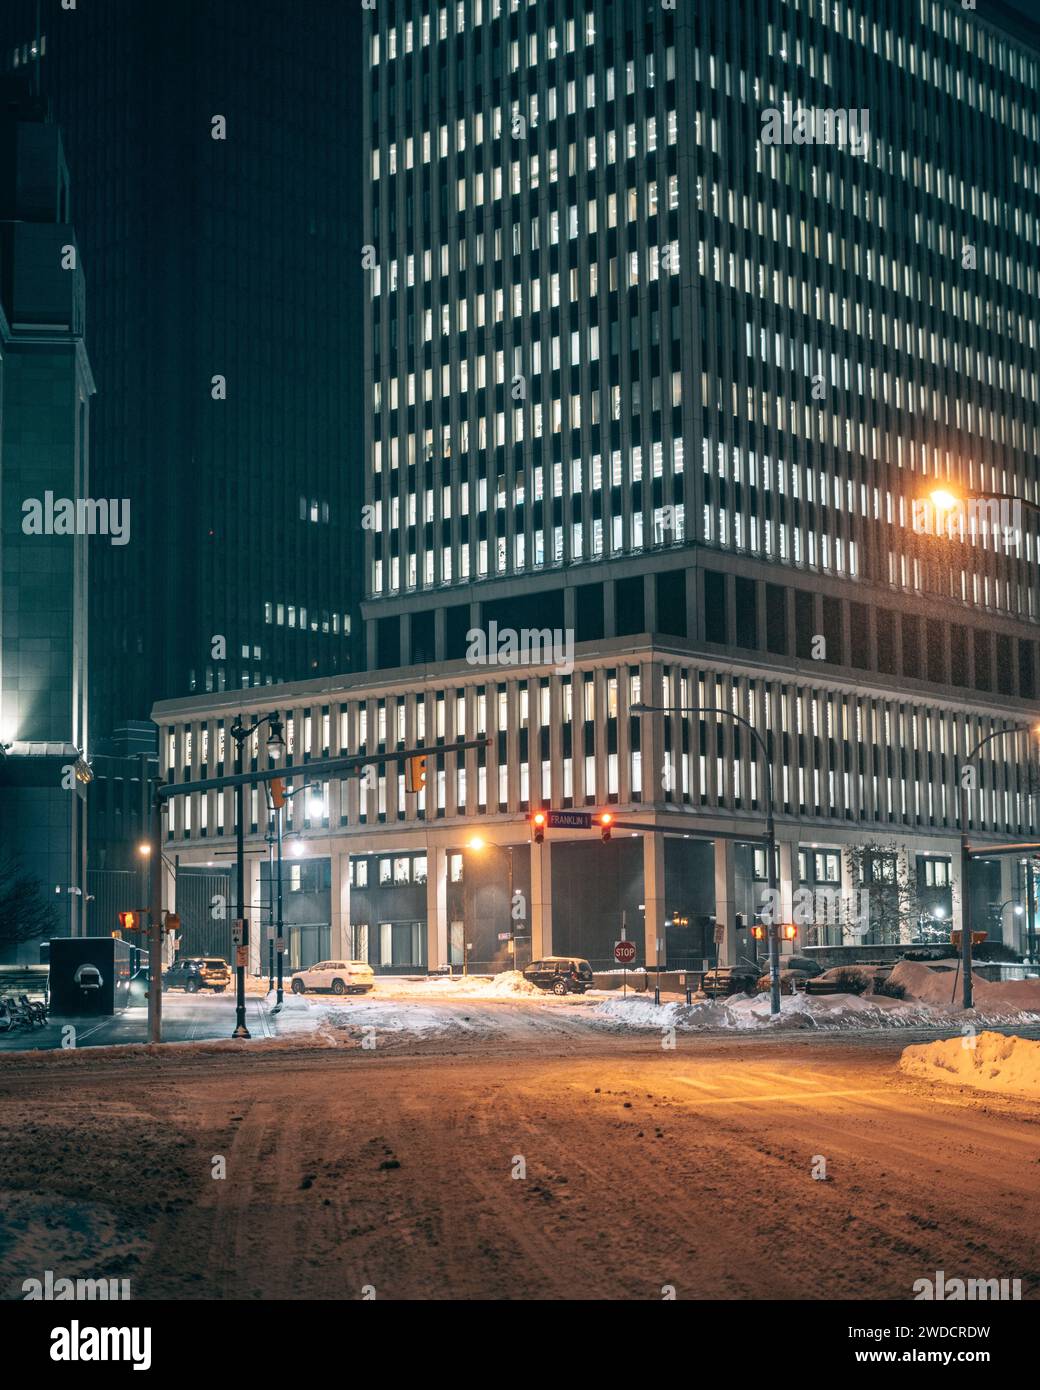 L'intersection de Niagara Street et Franklin Street par une nuit d'hiver enneigée dans le centre-ville de Buffalo, New York Banque D'Images